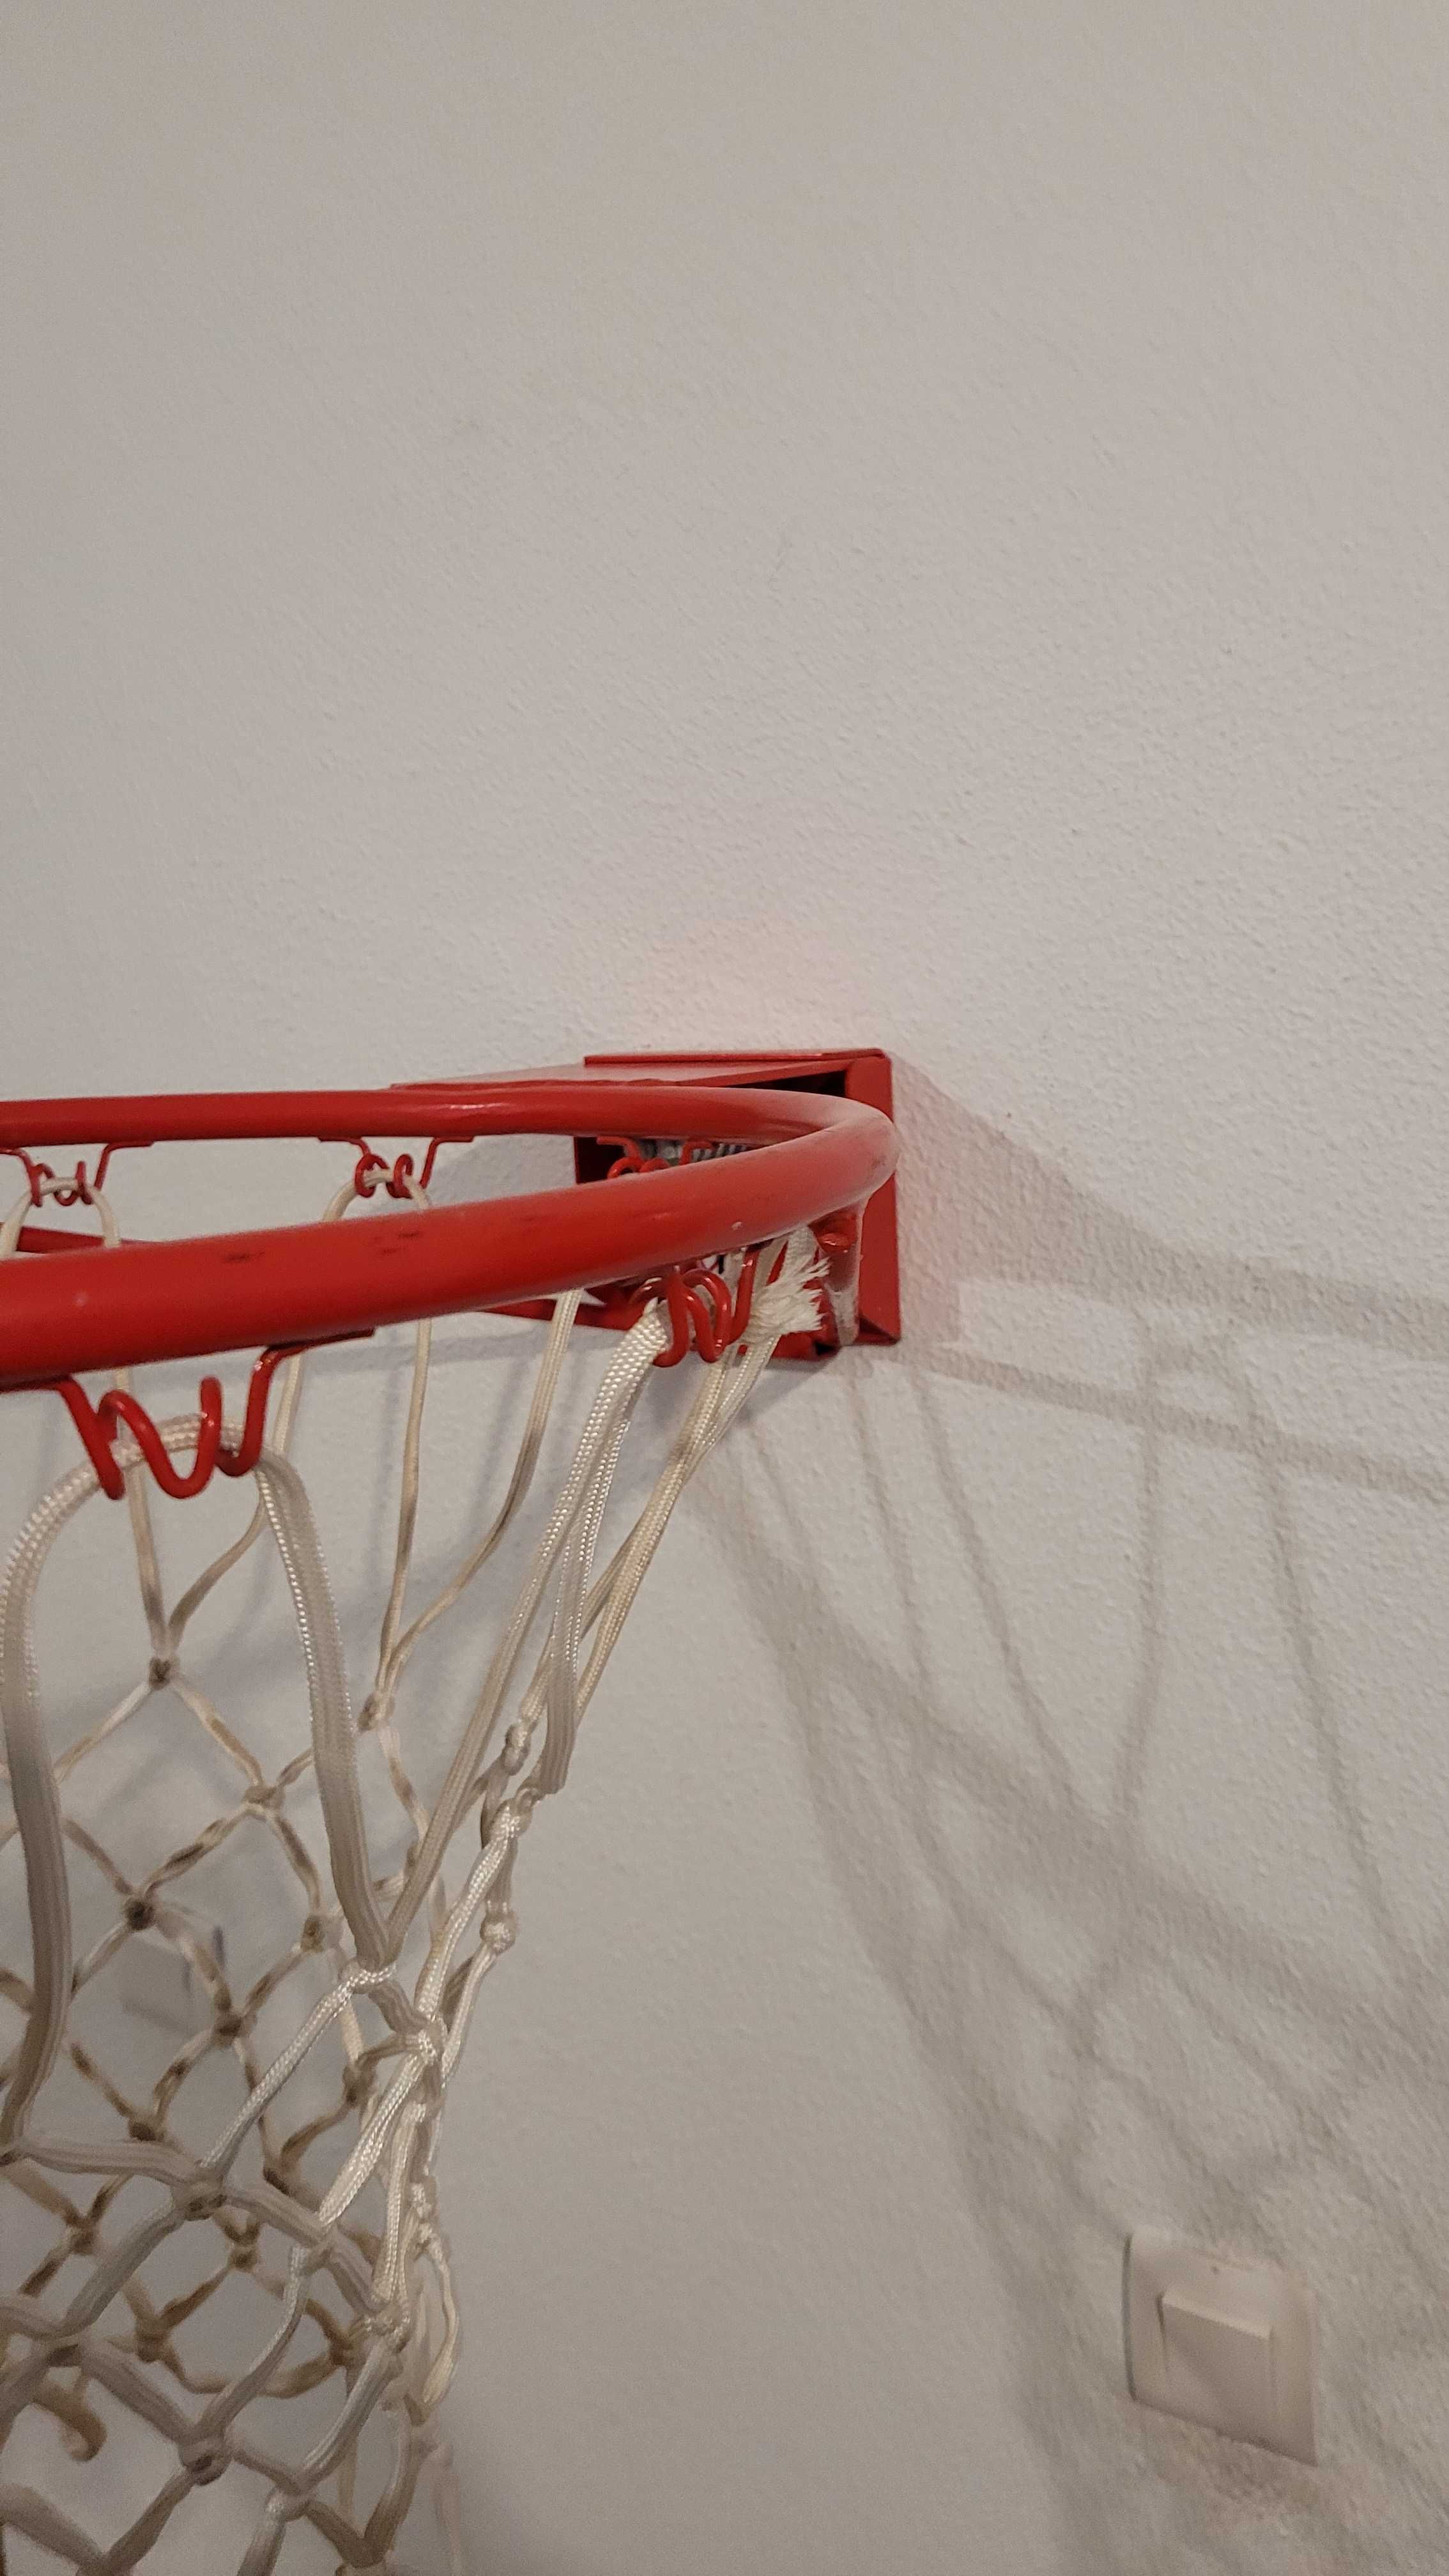 Cesto Basketball  como novo tamanho oficial com rede